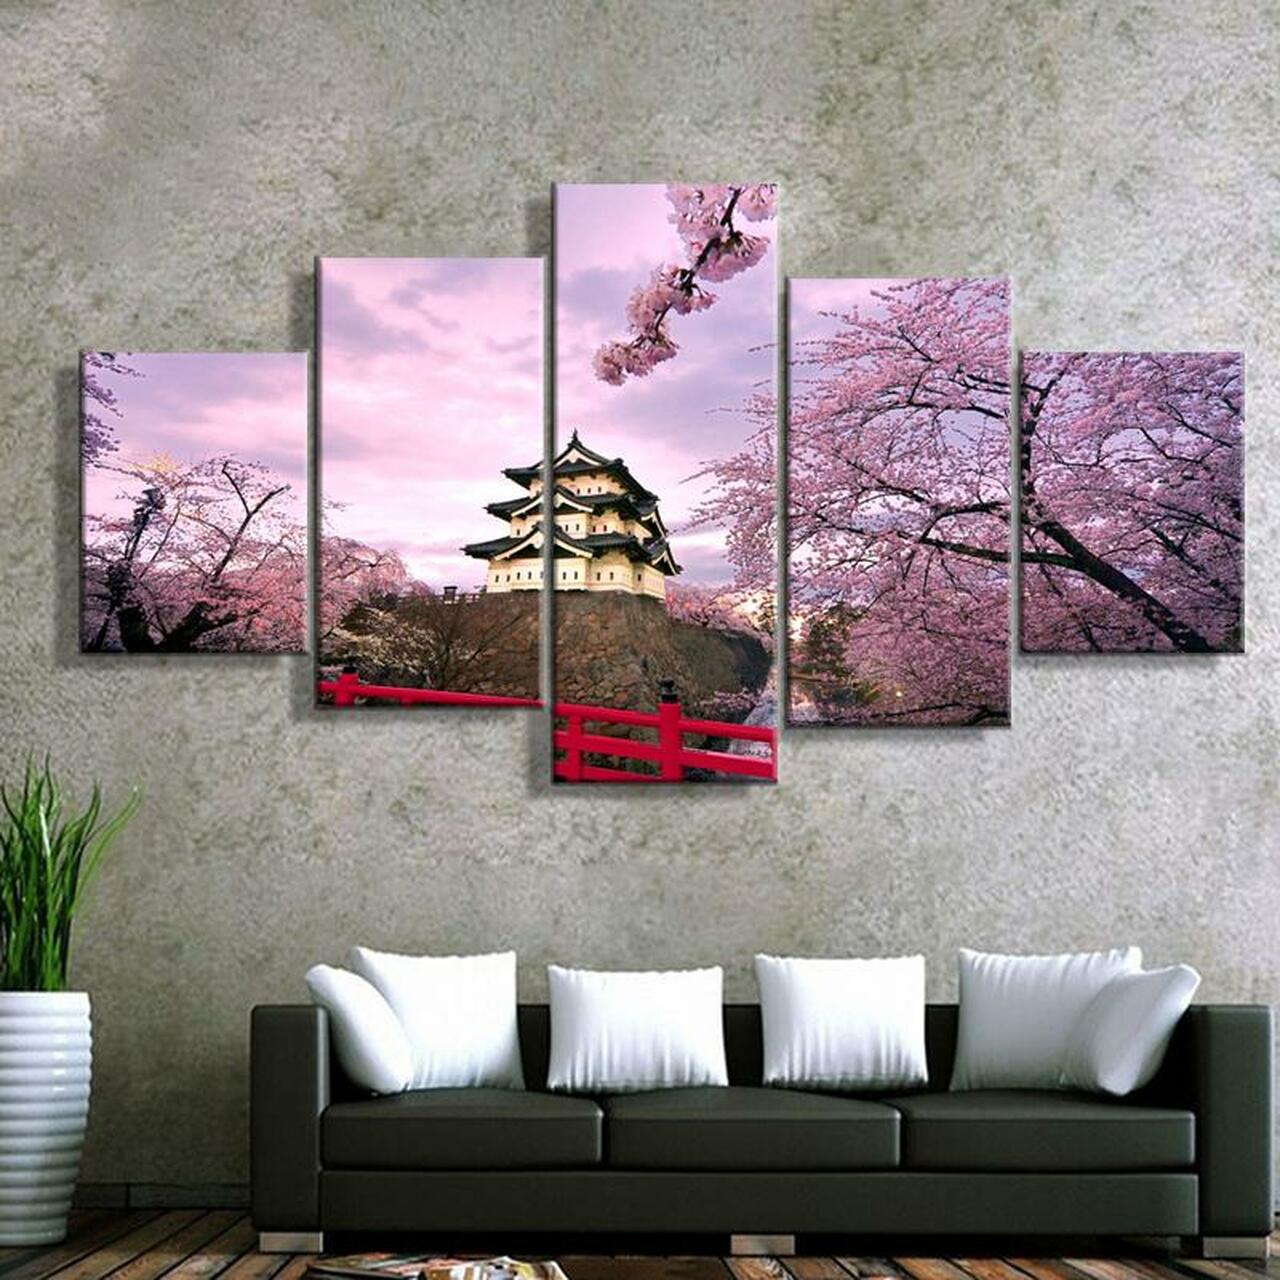 japanese pagoda 5 pices peinture sur toile impression sur toile toile art pour la dcoration intrieurewymgj